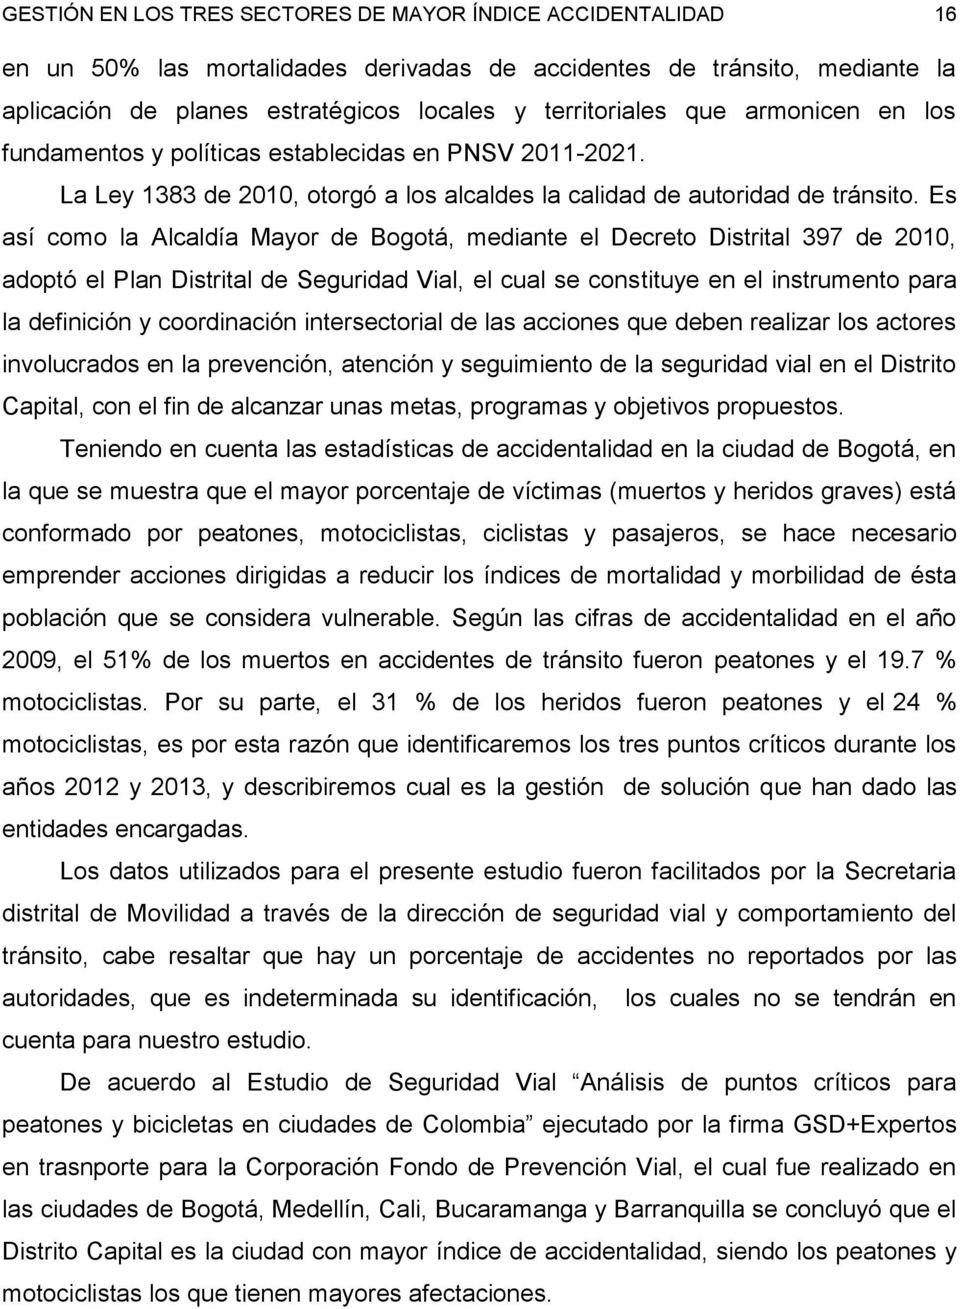 Es así como la Alcaldía Mayor de Bogotá, mediante el Decreto Distrital 397 de 2010, adoptó el Plan Distrital de Seguridad Vial, el cual se constituye en el instrumento para la definición y